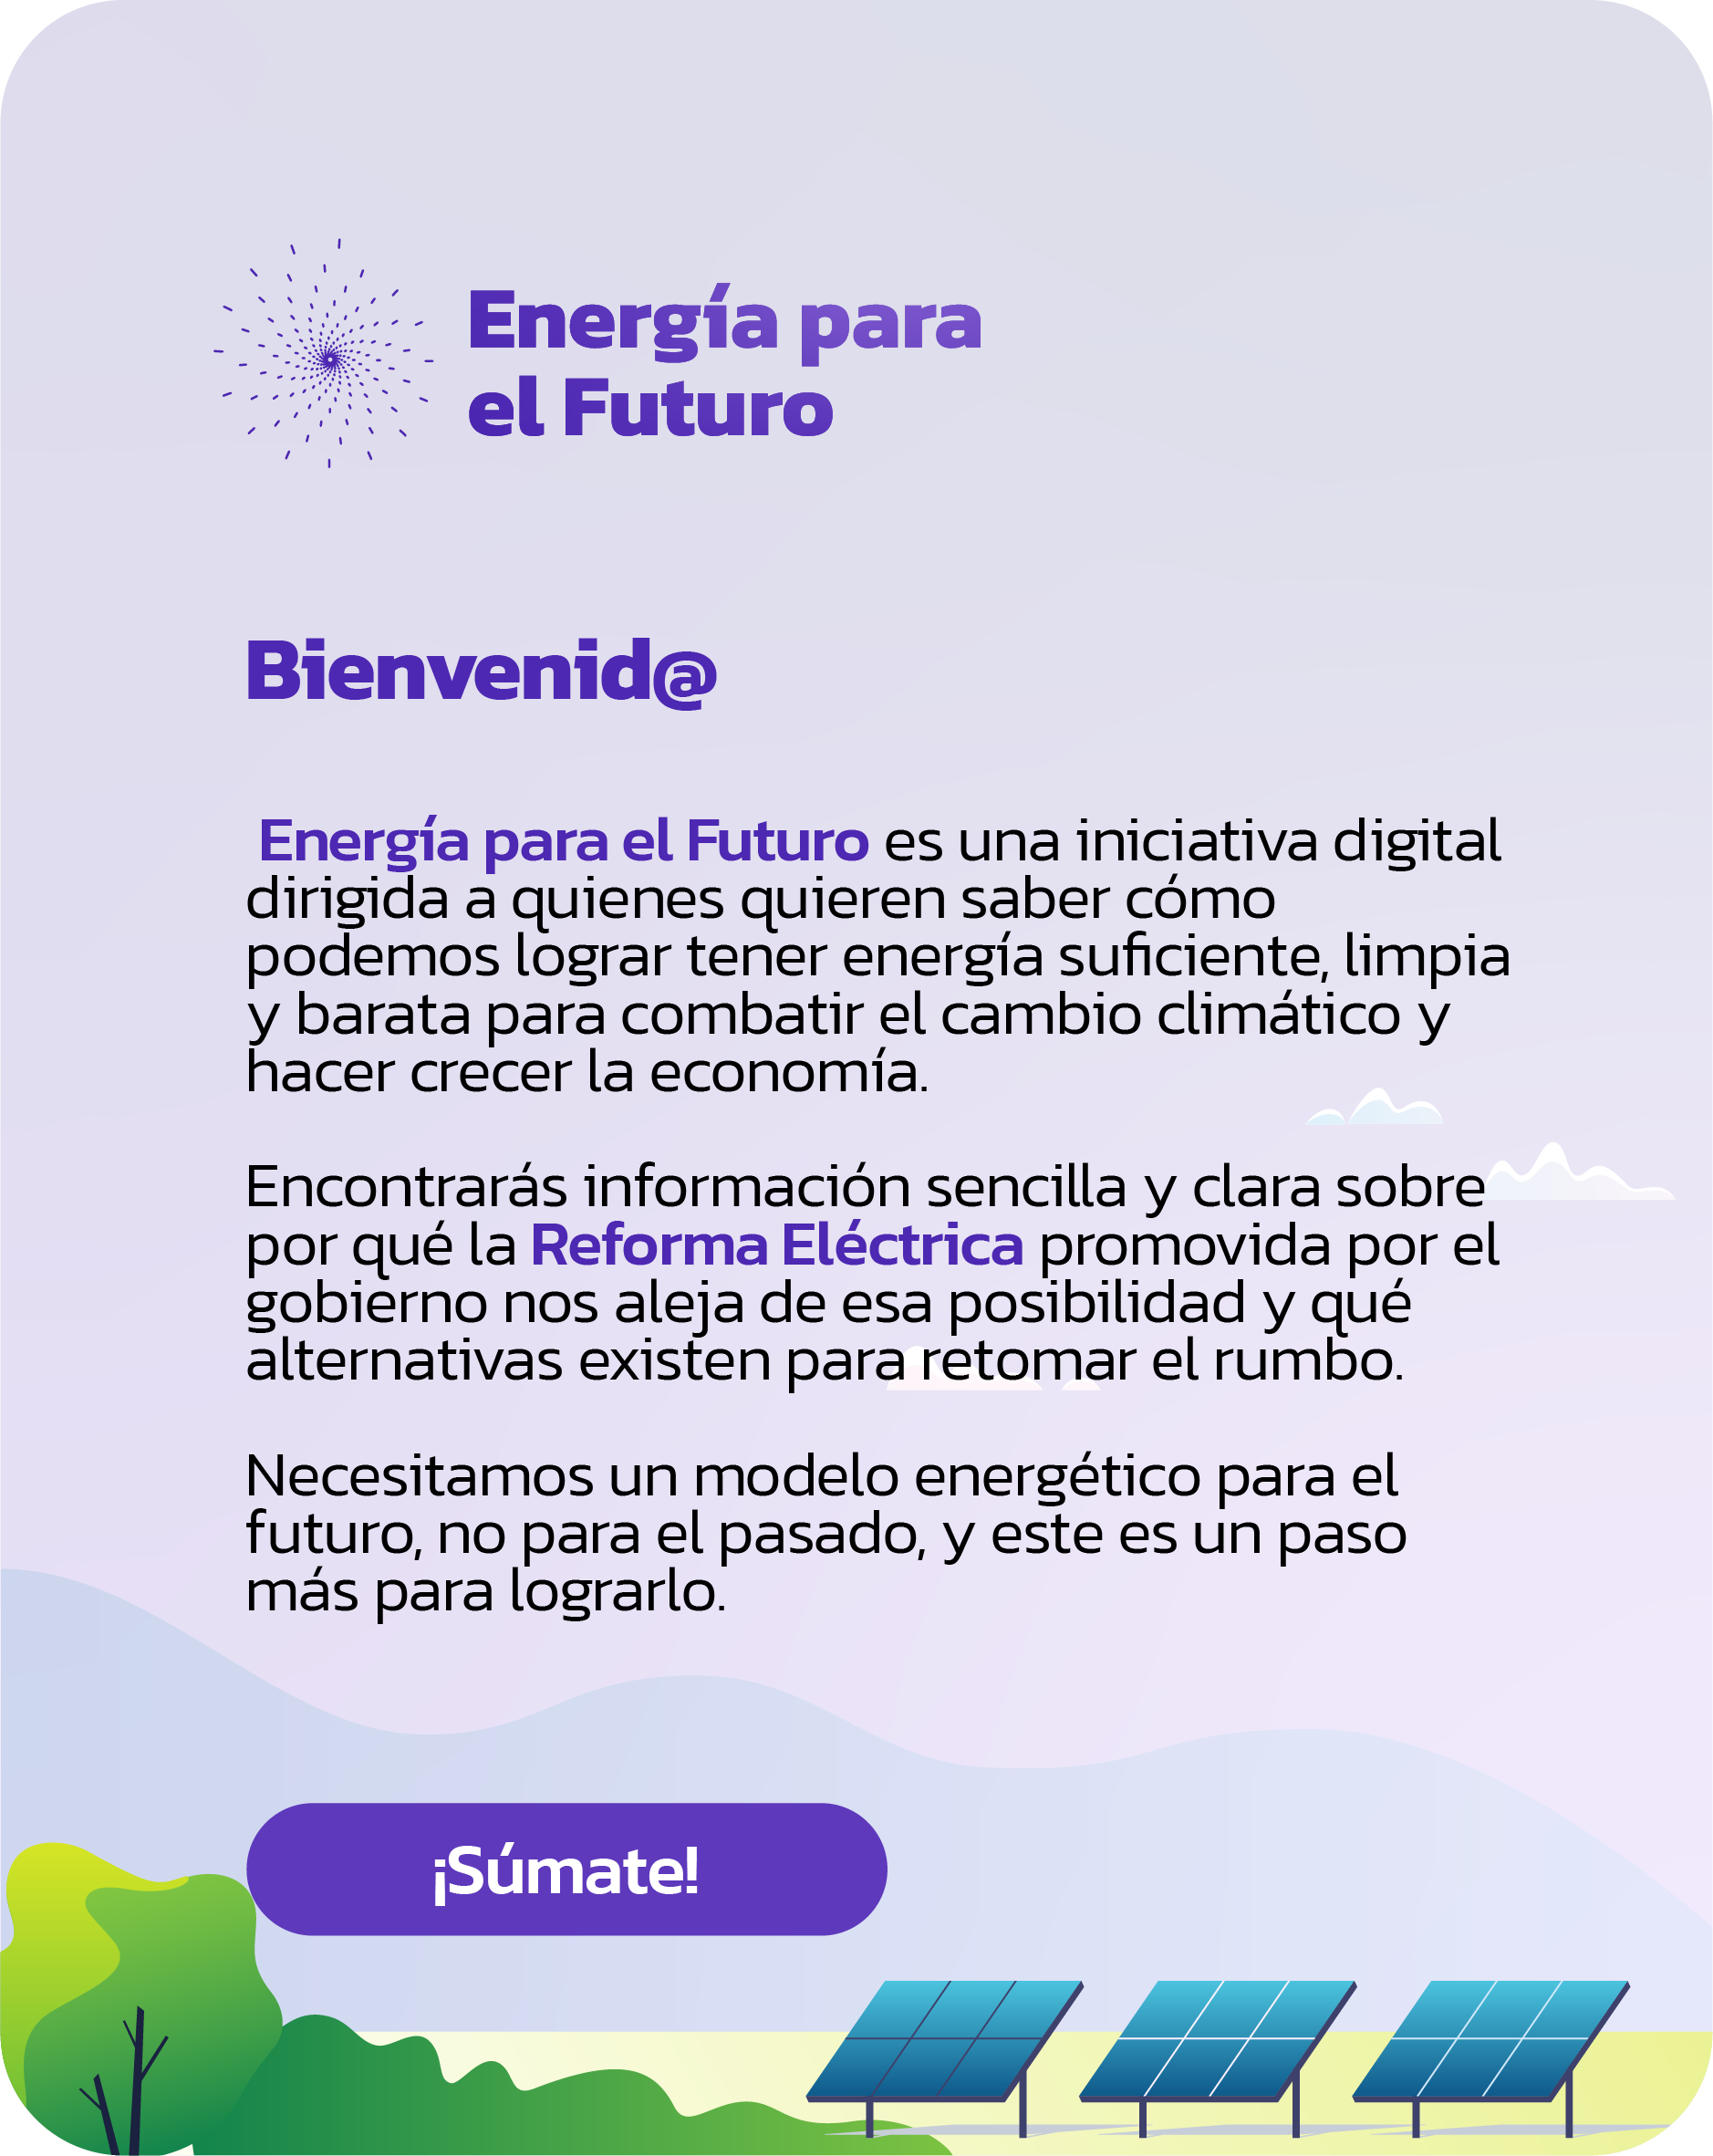 (c) Energiaparaelfuturo.org